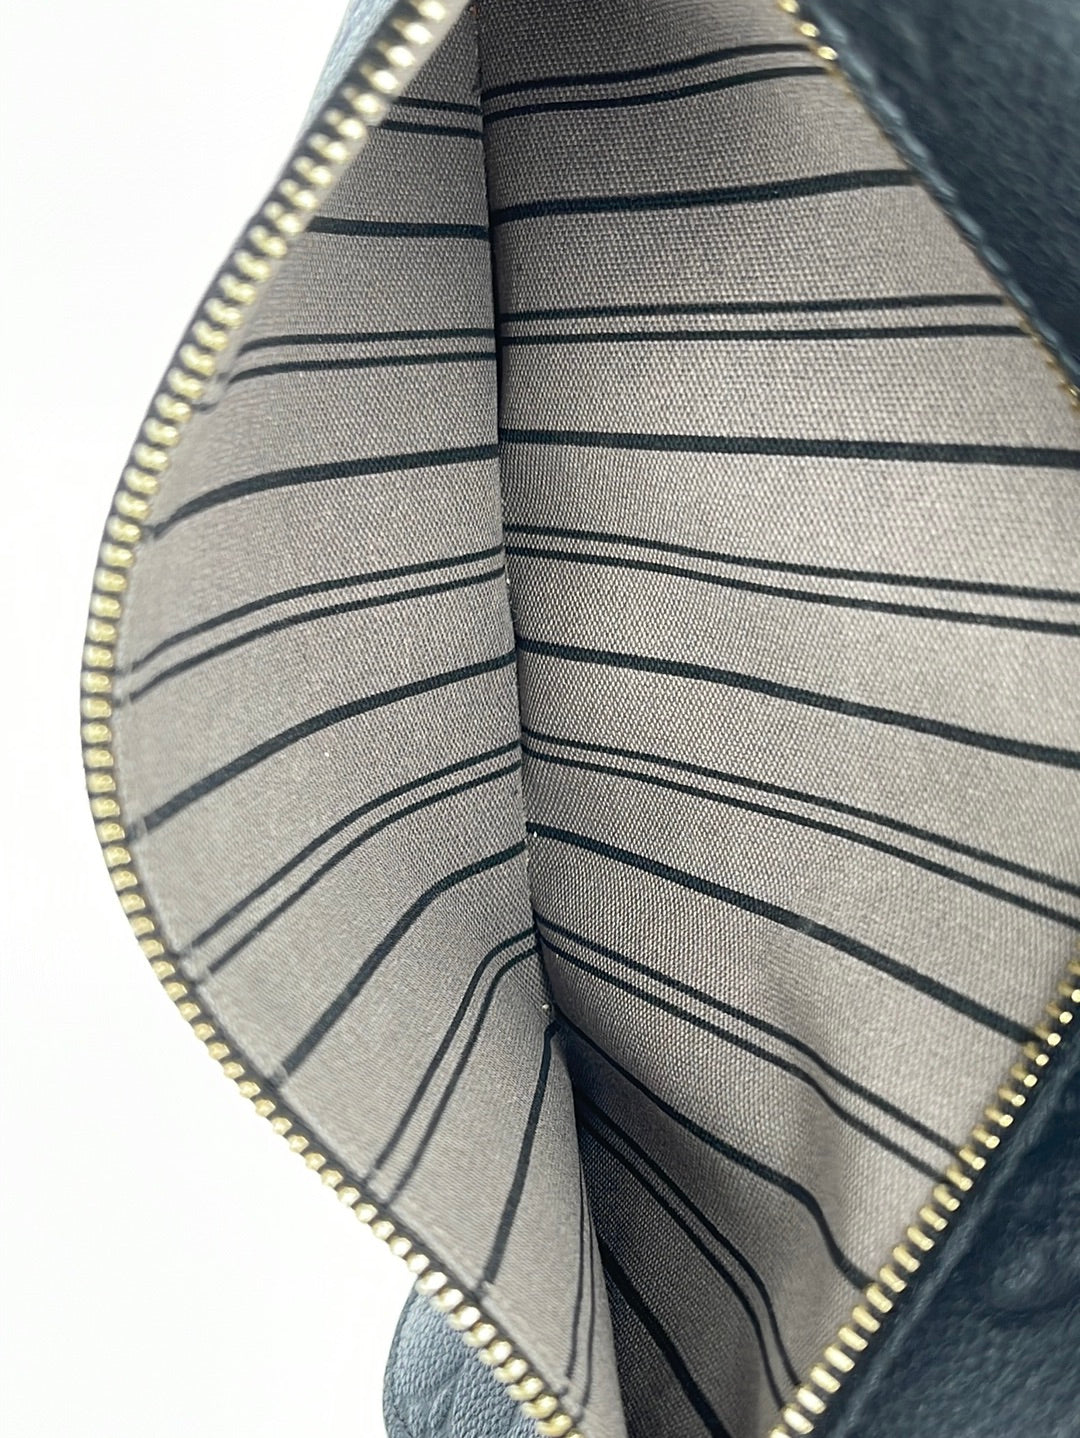 Louis Vuitton // Black Empriente Pochette Metis Bag – VSP Consignment